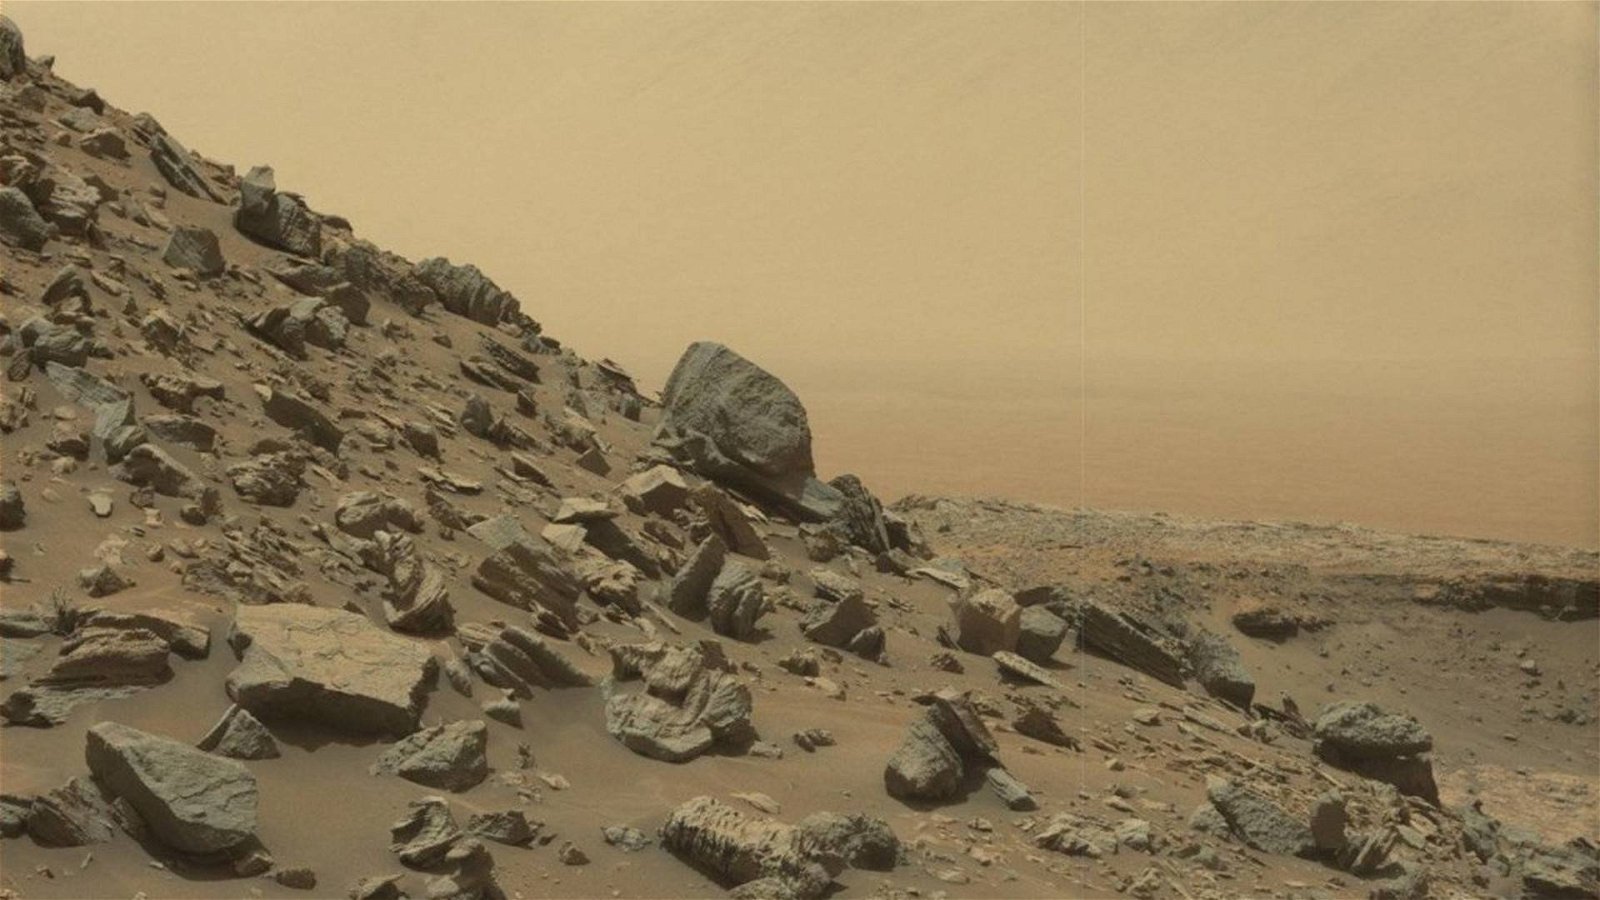 Immagine di Marte, niente lancio del rover europeo quest’anno a causa delle sanzioni alla Russia